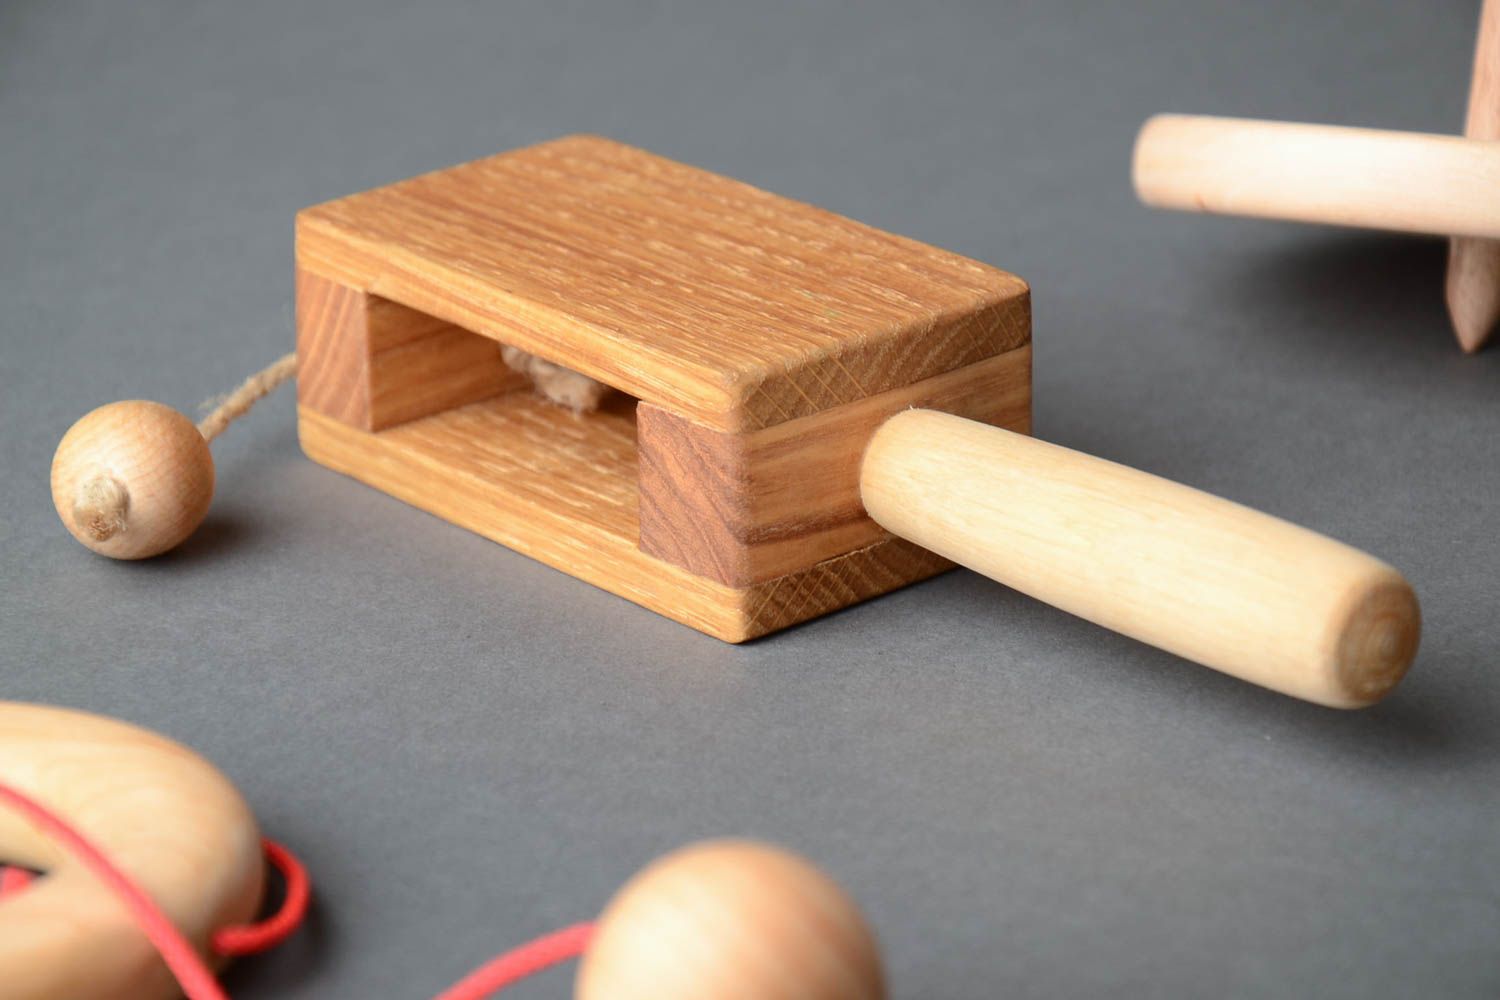 Öko Holz Spielzeug für Kinder mit Leinöl durchtränkt aus Eichenholz handgemacht foto 1